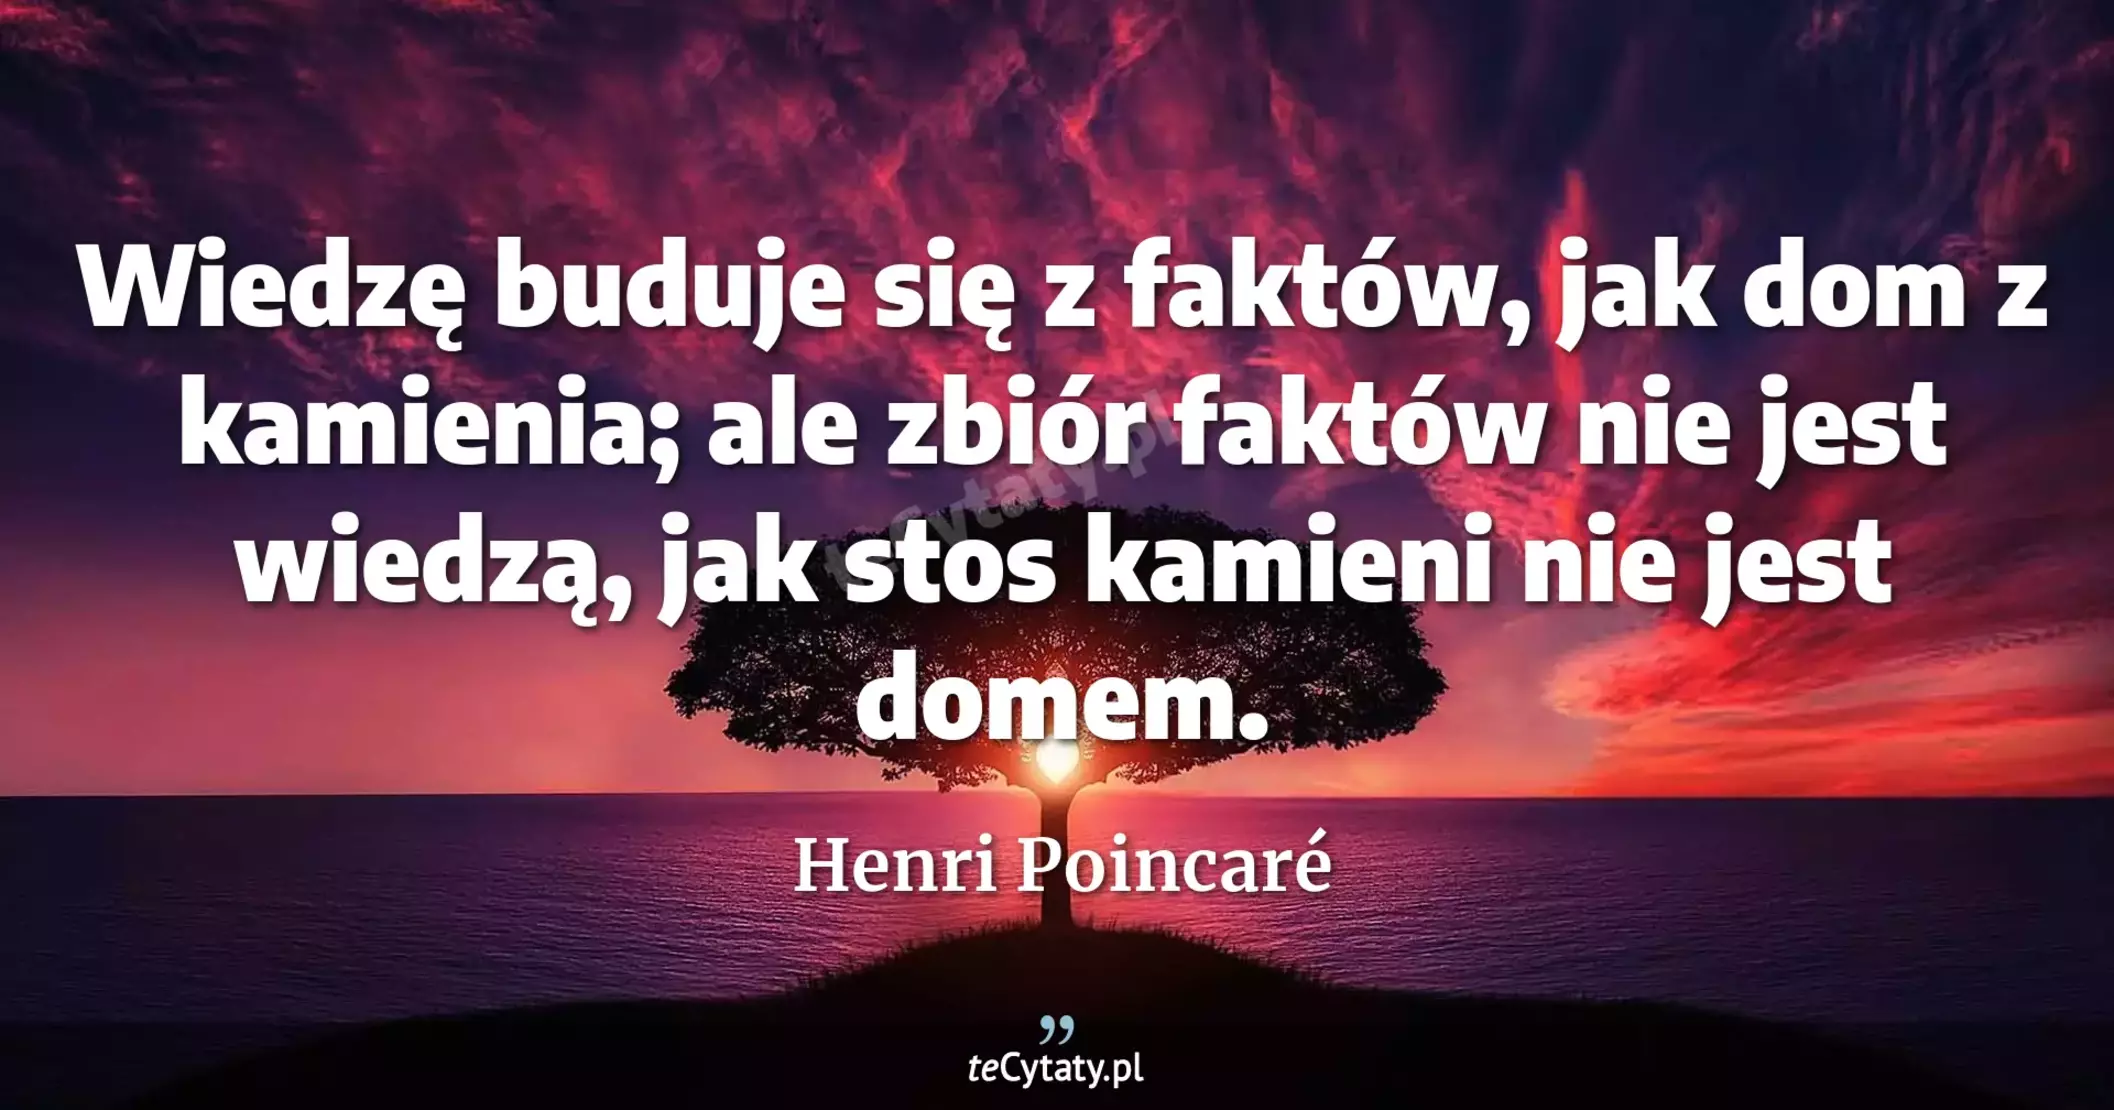 Wiedzę buduje się z faktów, jak dom z kamienia; ale zbiór faktów nie jest wiedzą, jak stos kamieni nie jest domem. - Henri Poincaré